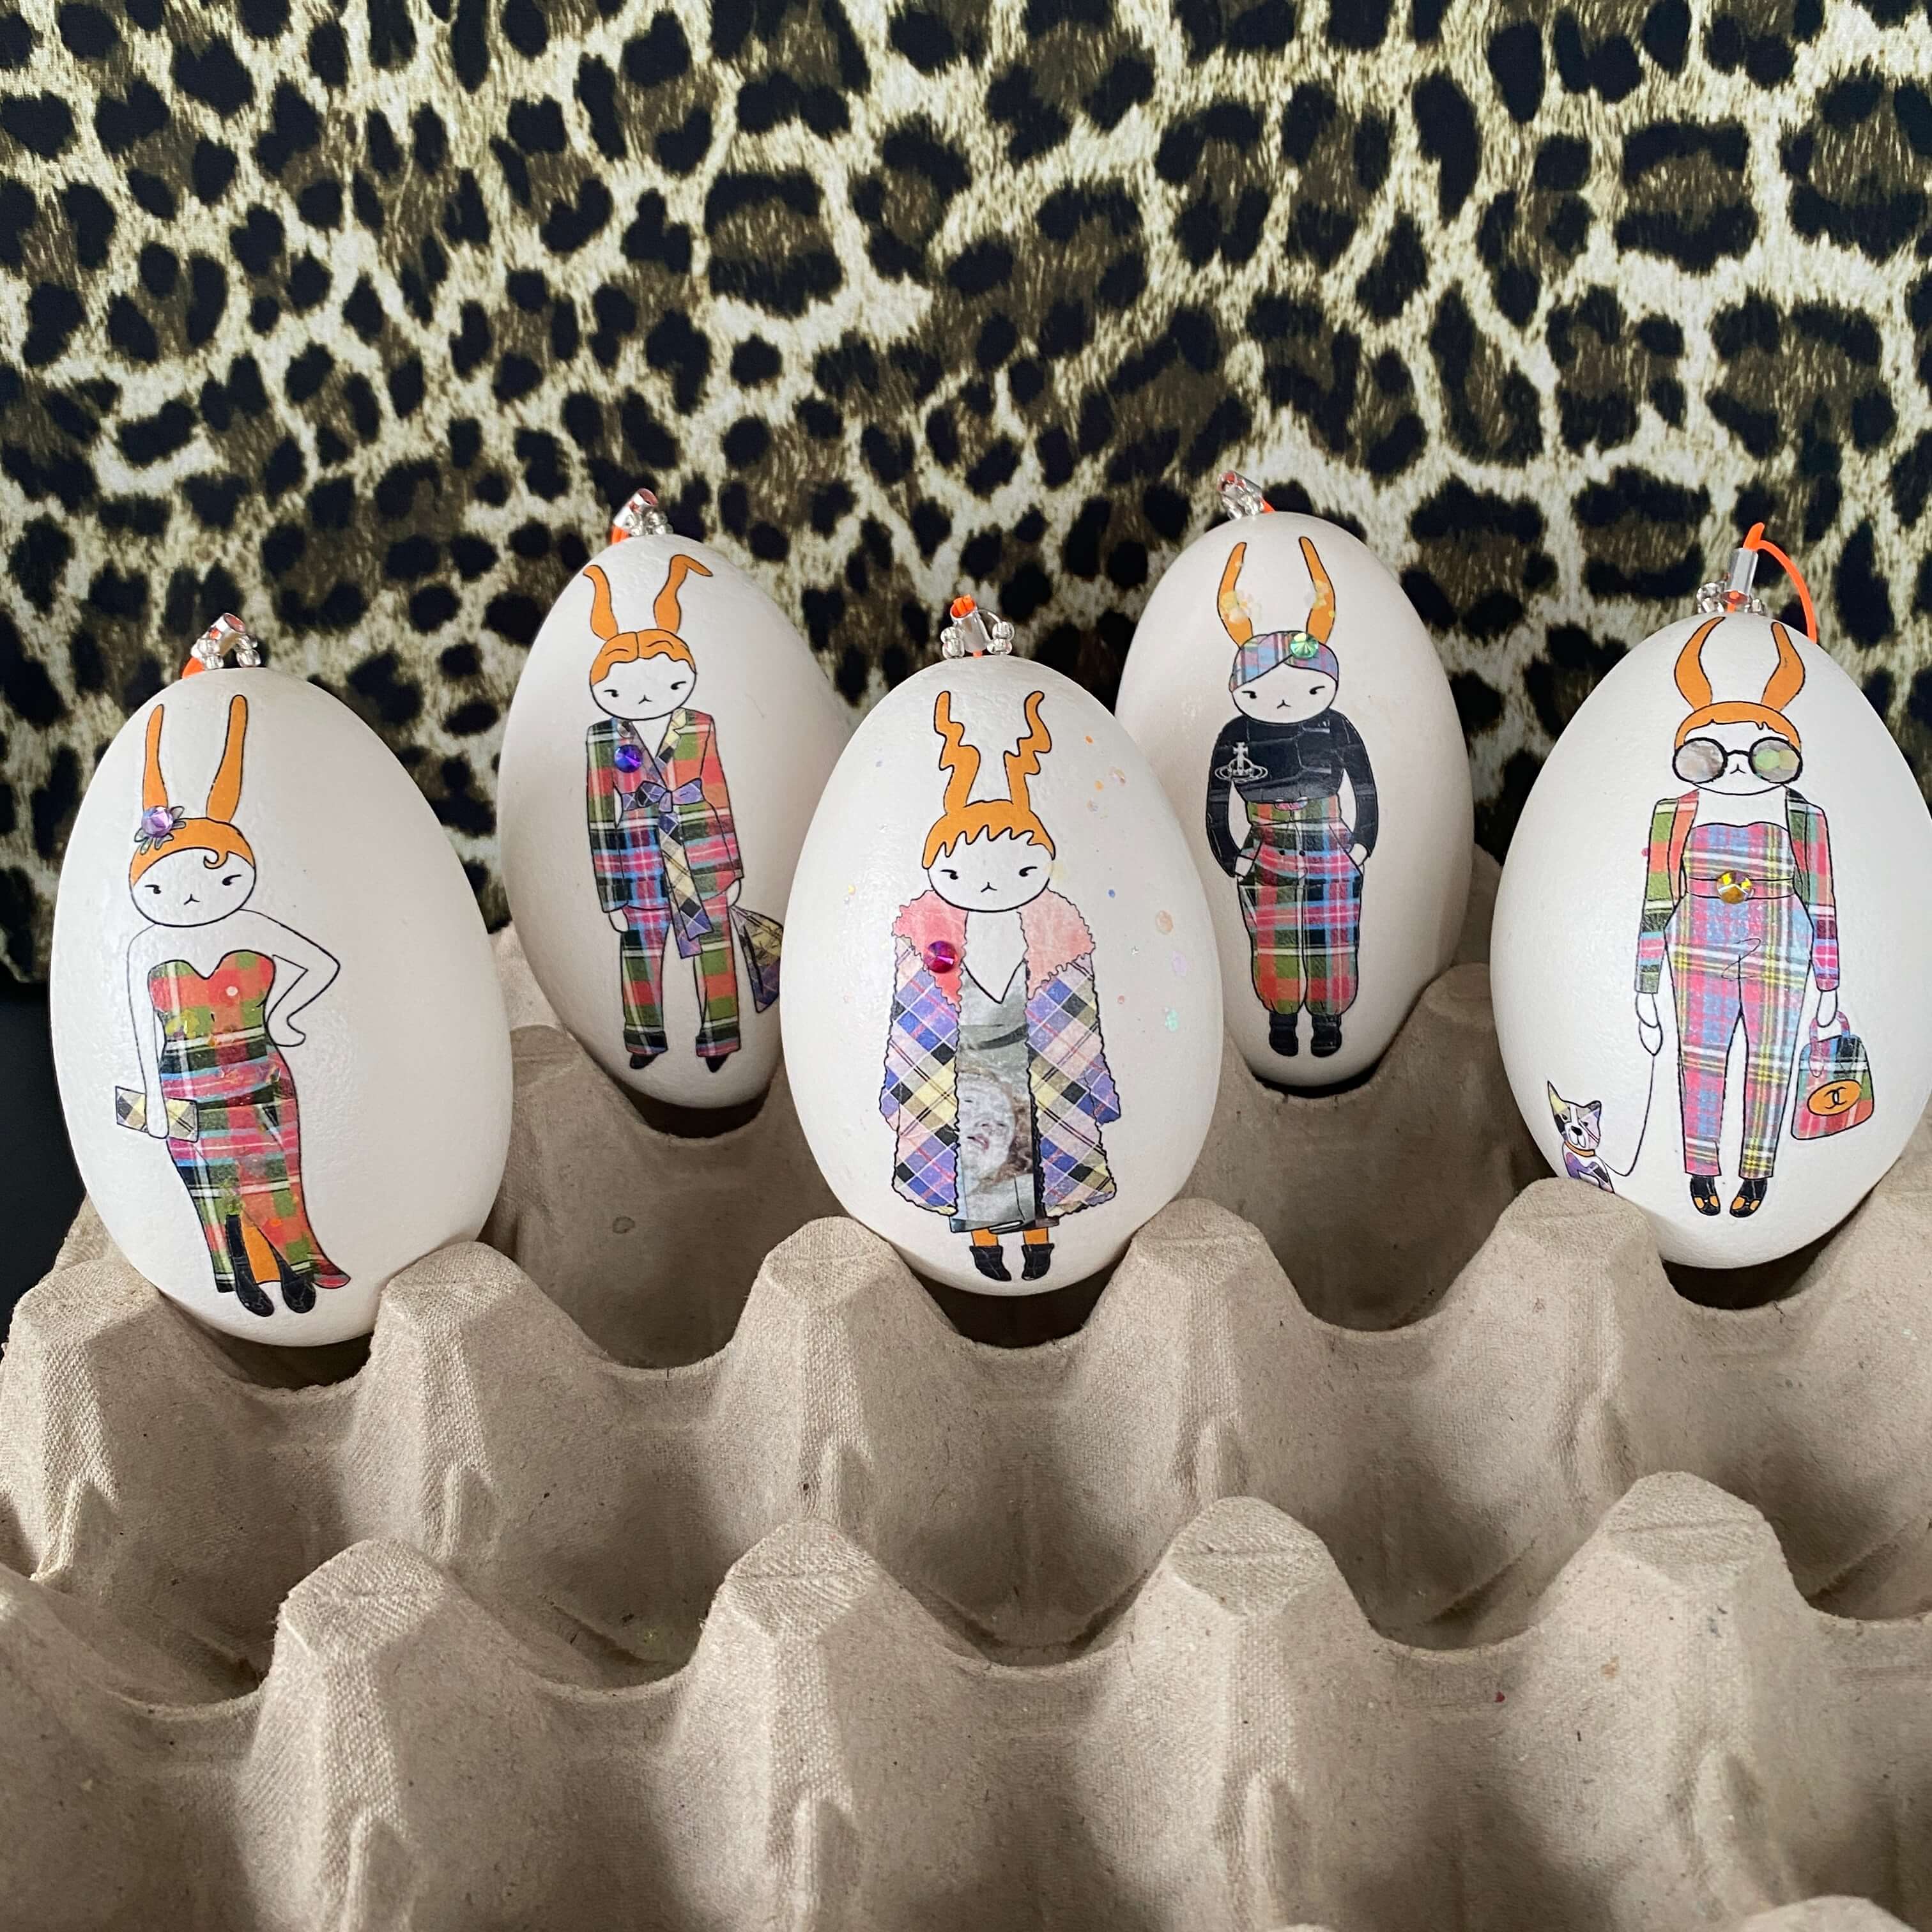 Ostereier-Deko: Echte Kunst trifft – Eier ei-nzigartig auf